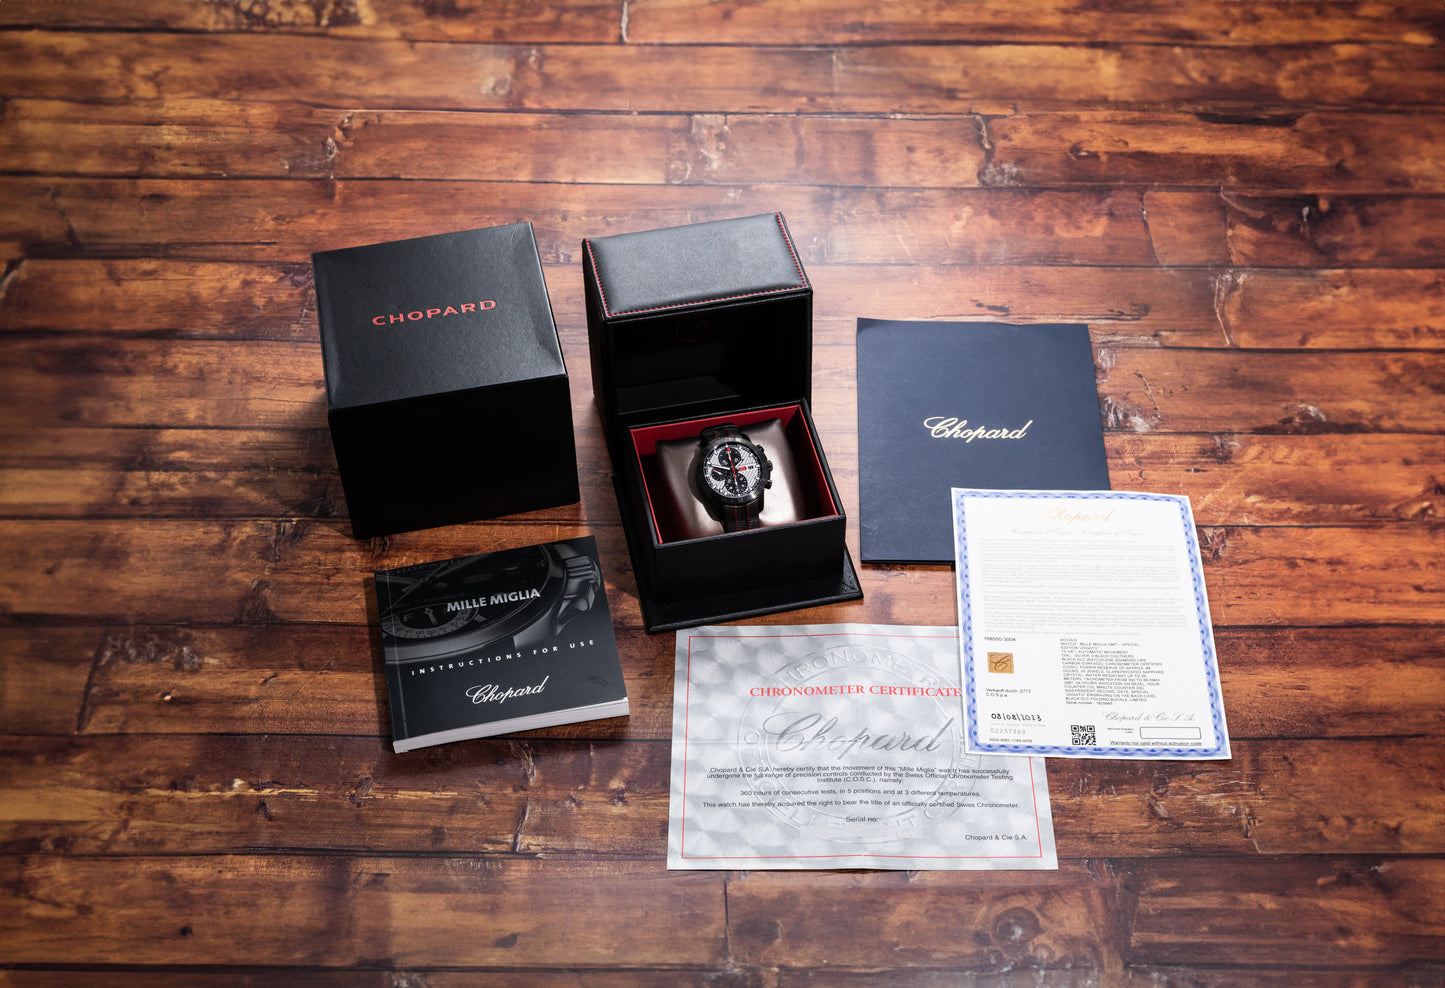 Chopard Mille Miglia GMT Chronograph 'Zagato' Limited Edition